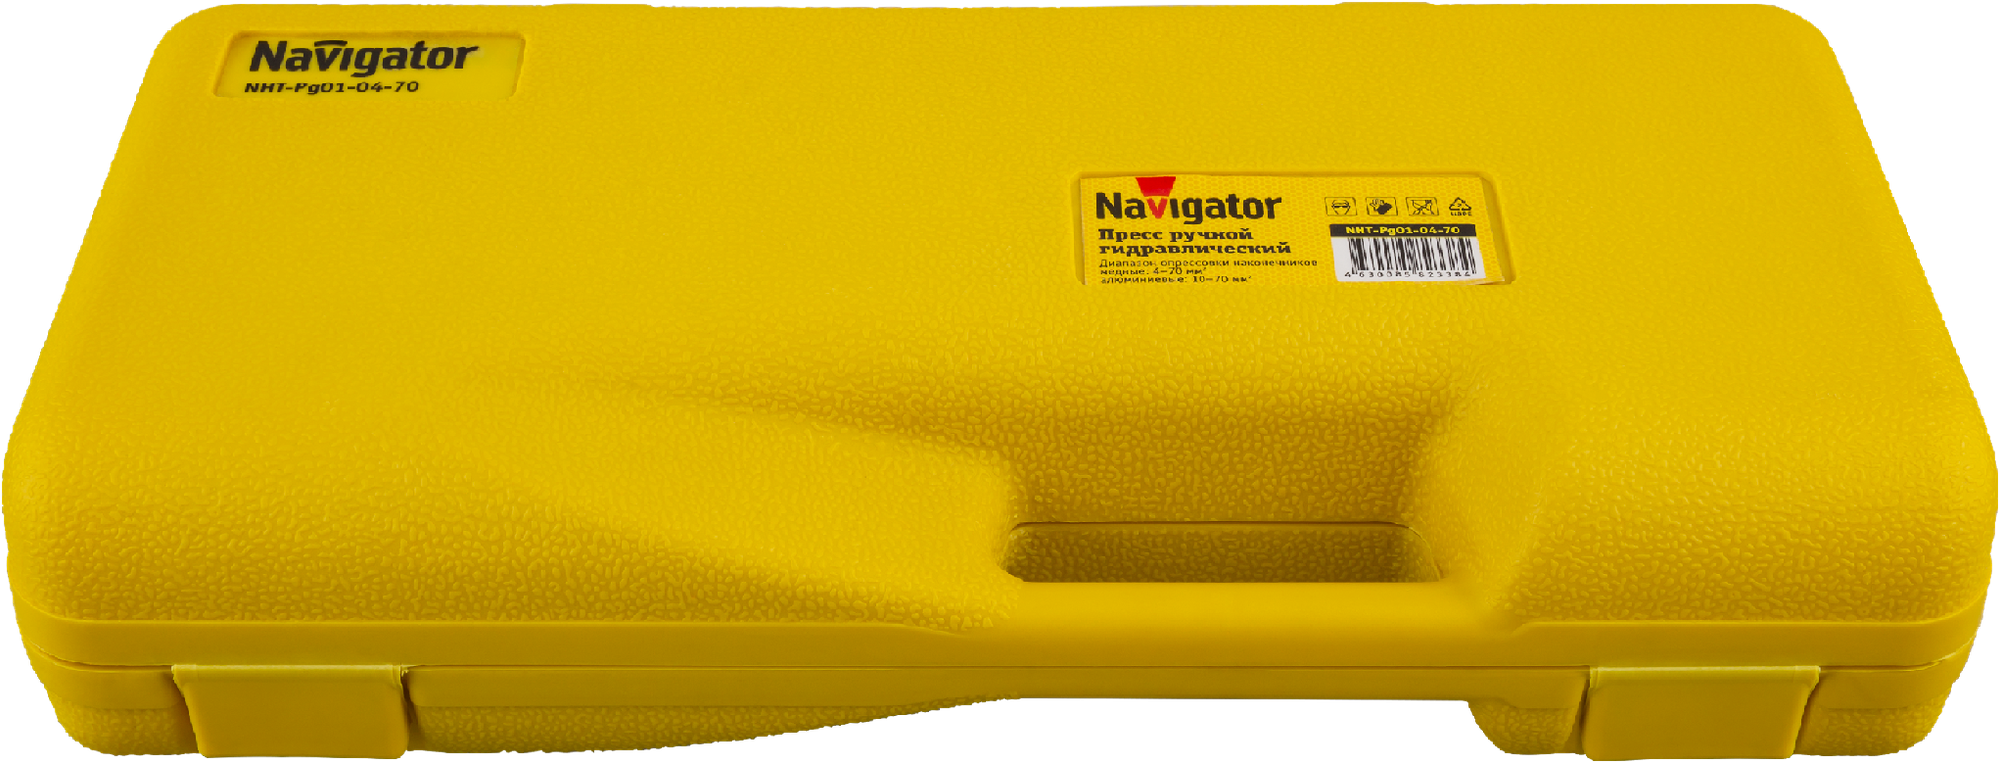 Пресс гидравлический Navigator 82 338 NHT-Pg01-04-70 (ручной, 4-70 мм2)